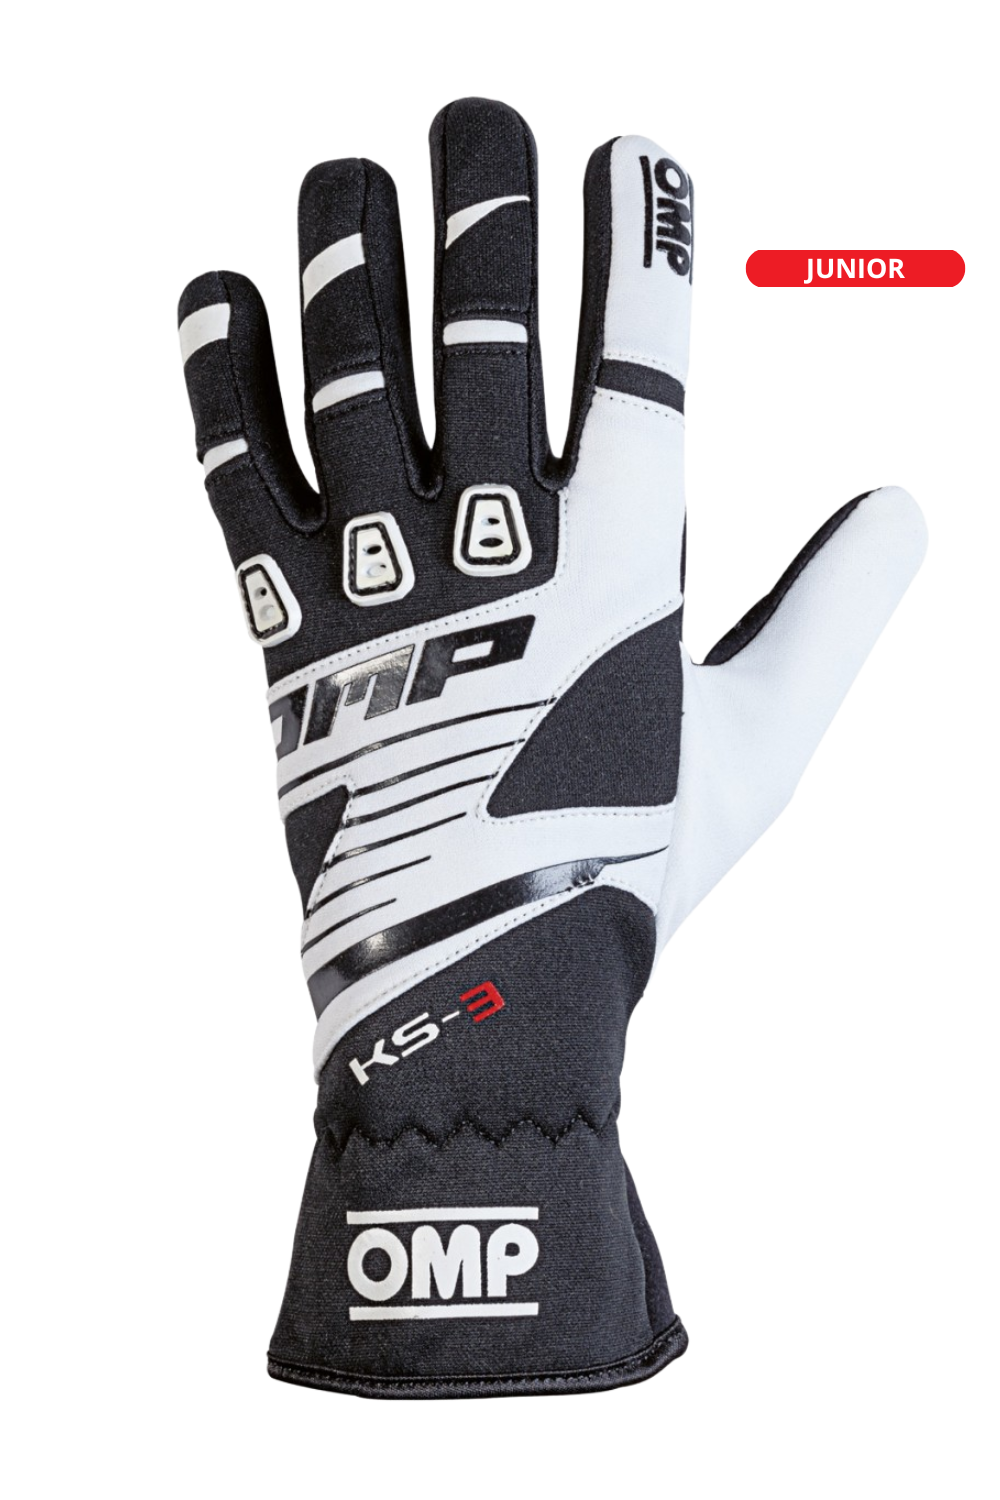 OMP KS-3 Handschoenen Zwart/Wit Junior